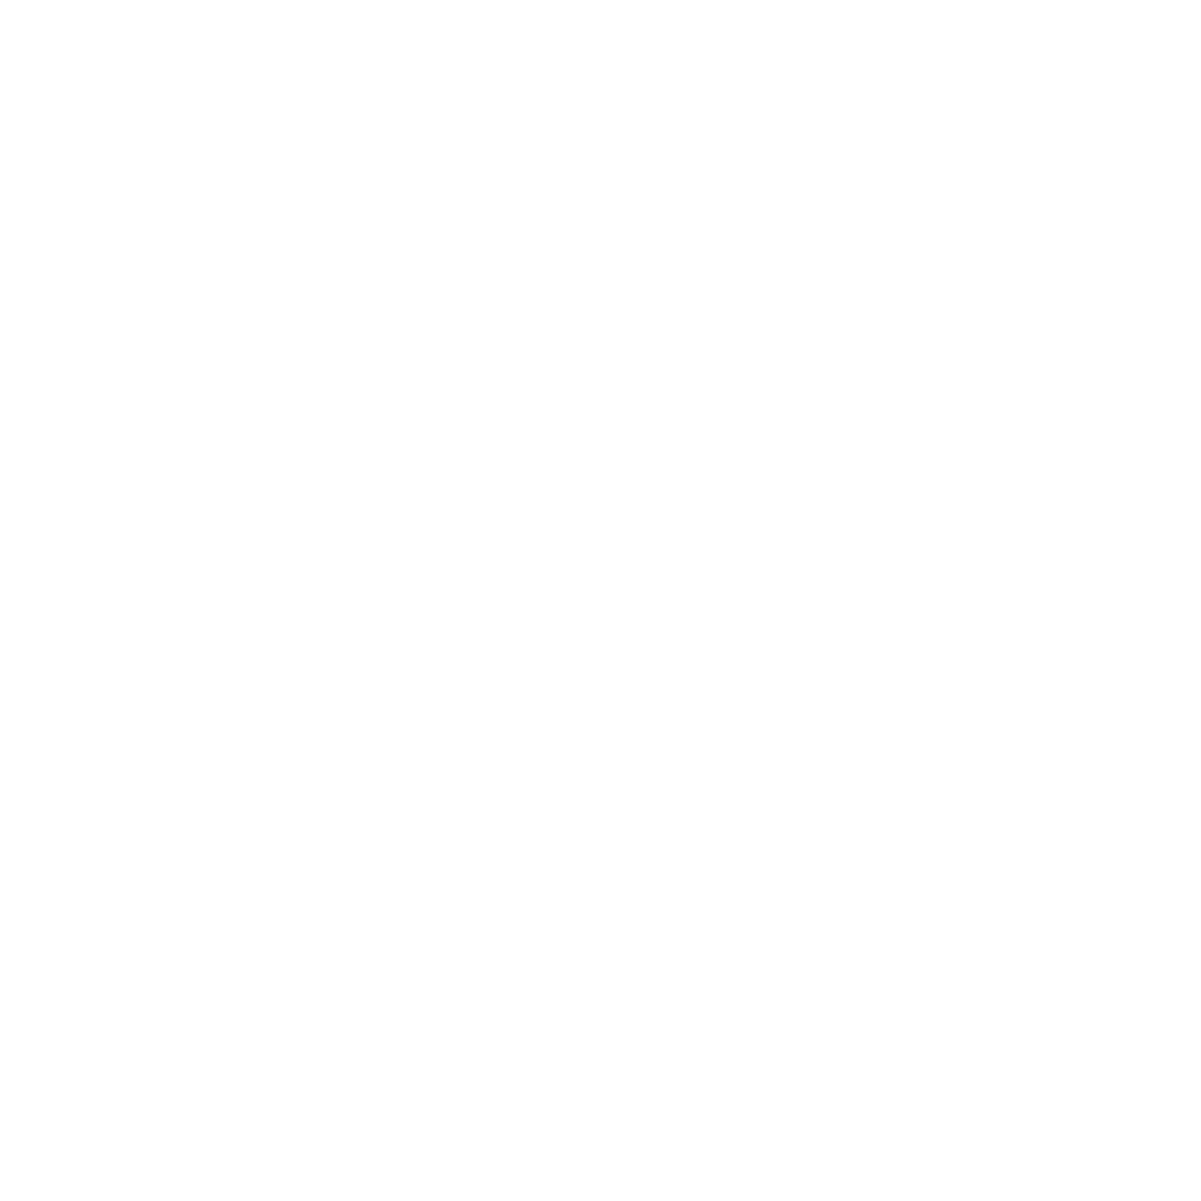 Dr. Ashley Turner